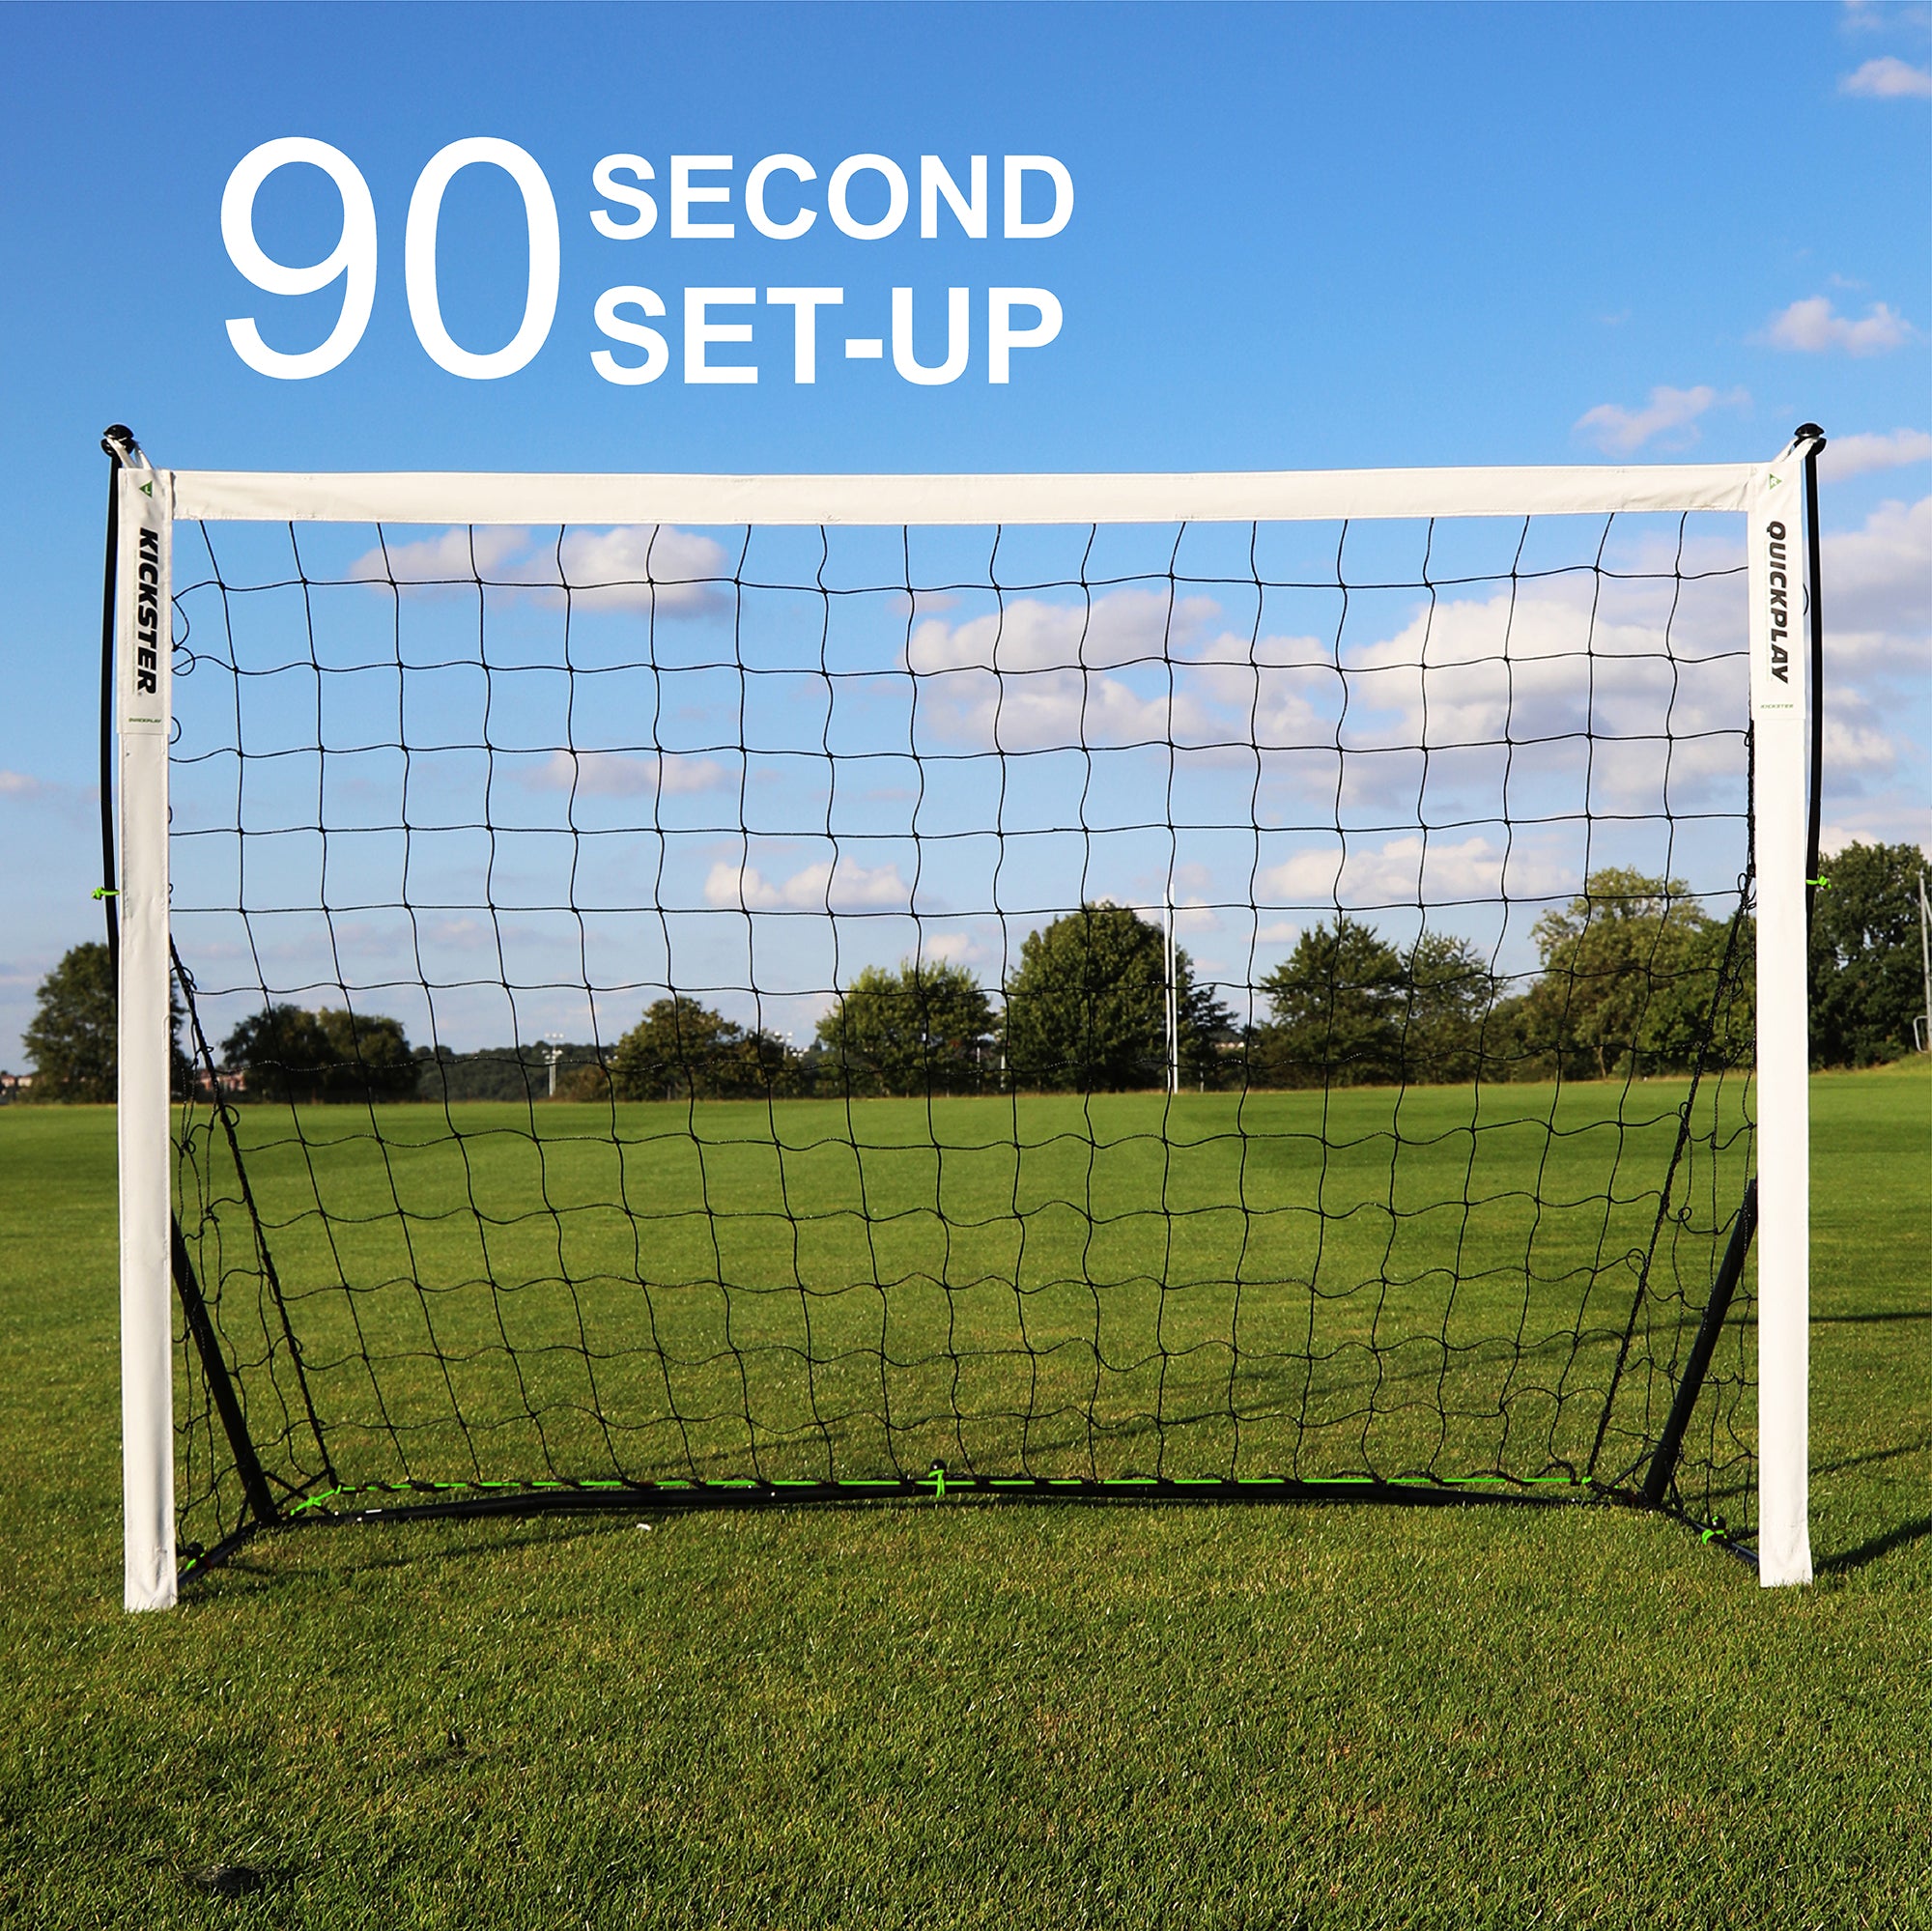 KICKSTER 8x5' Portable Small Football Goal | 2 Min setup